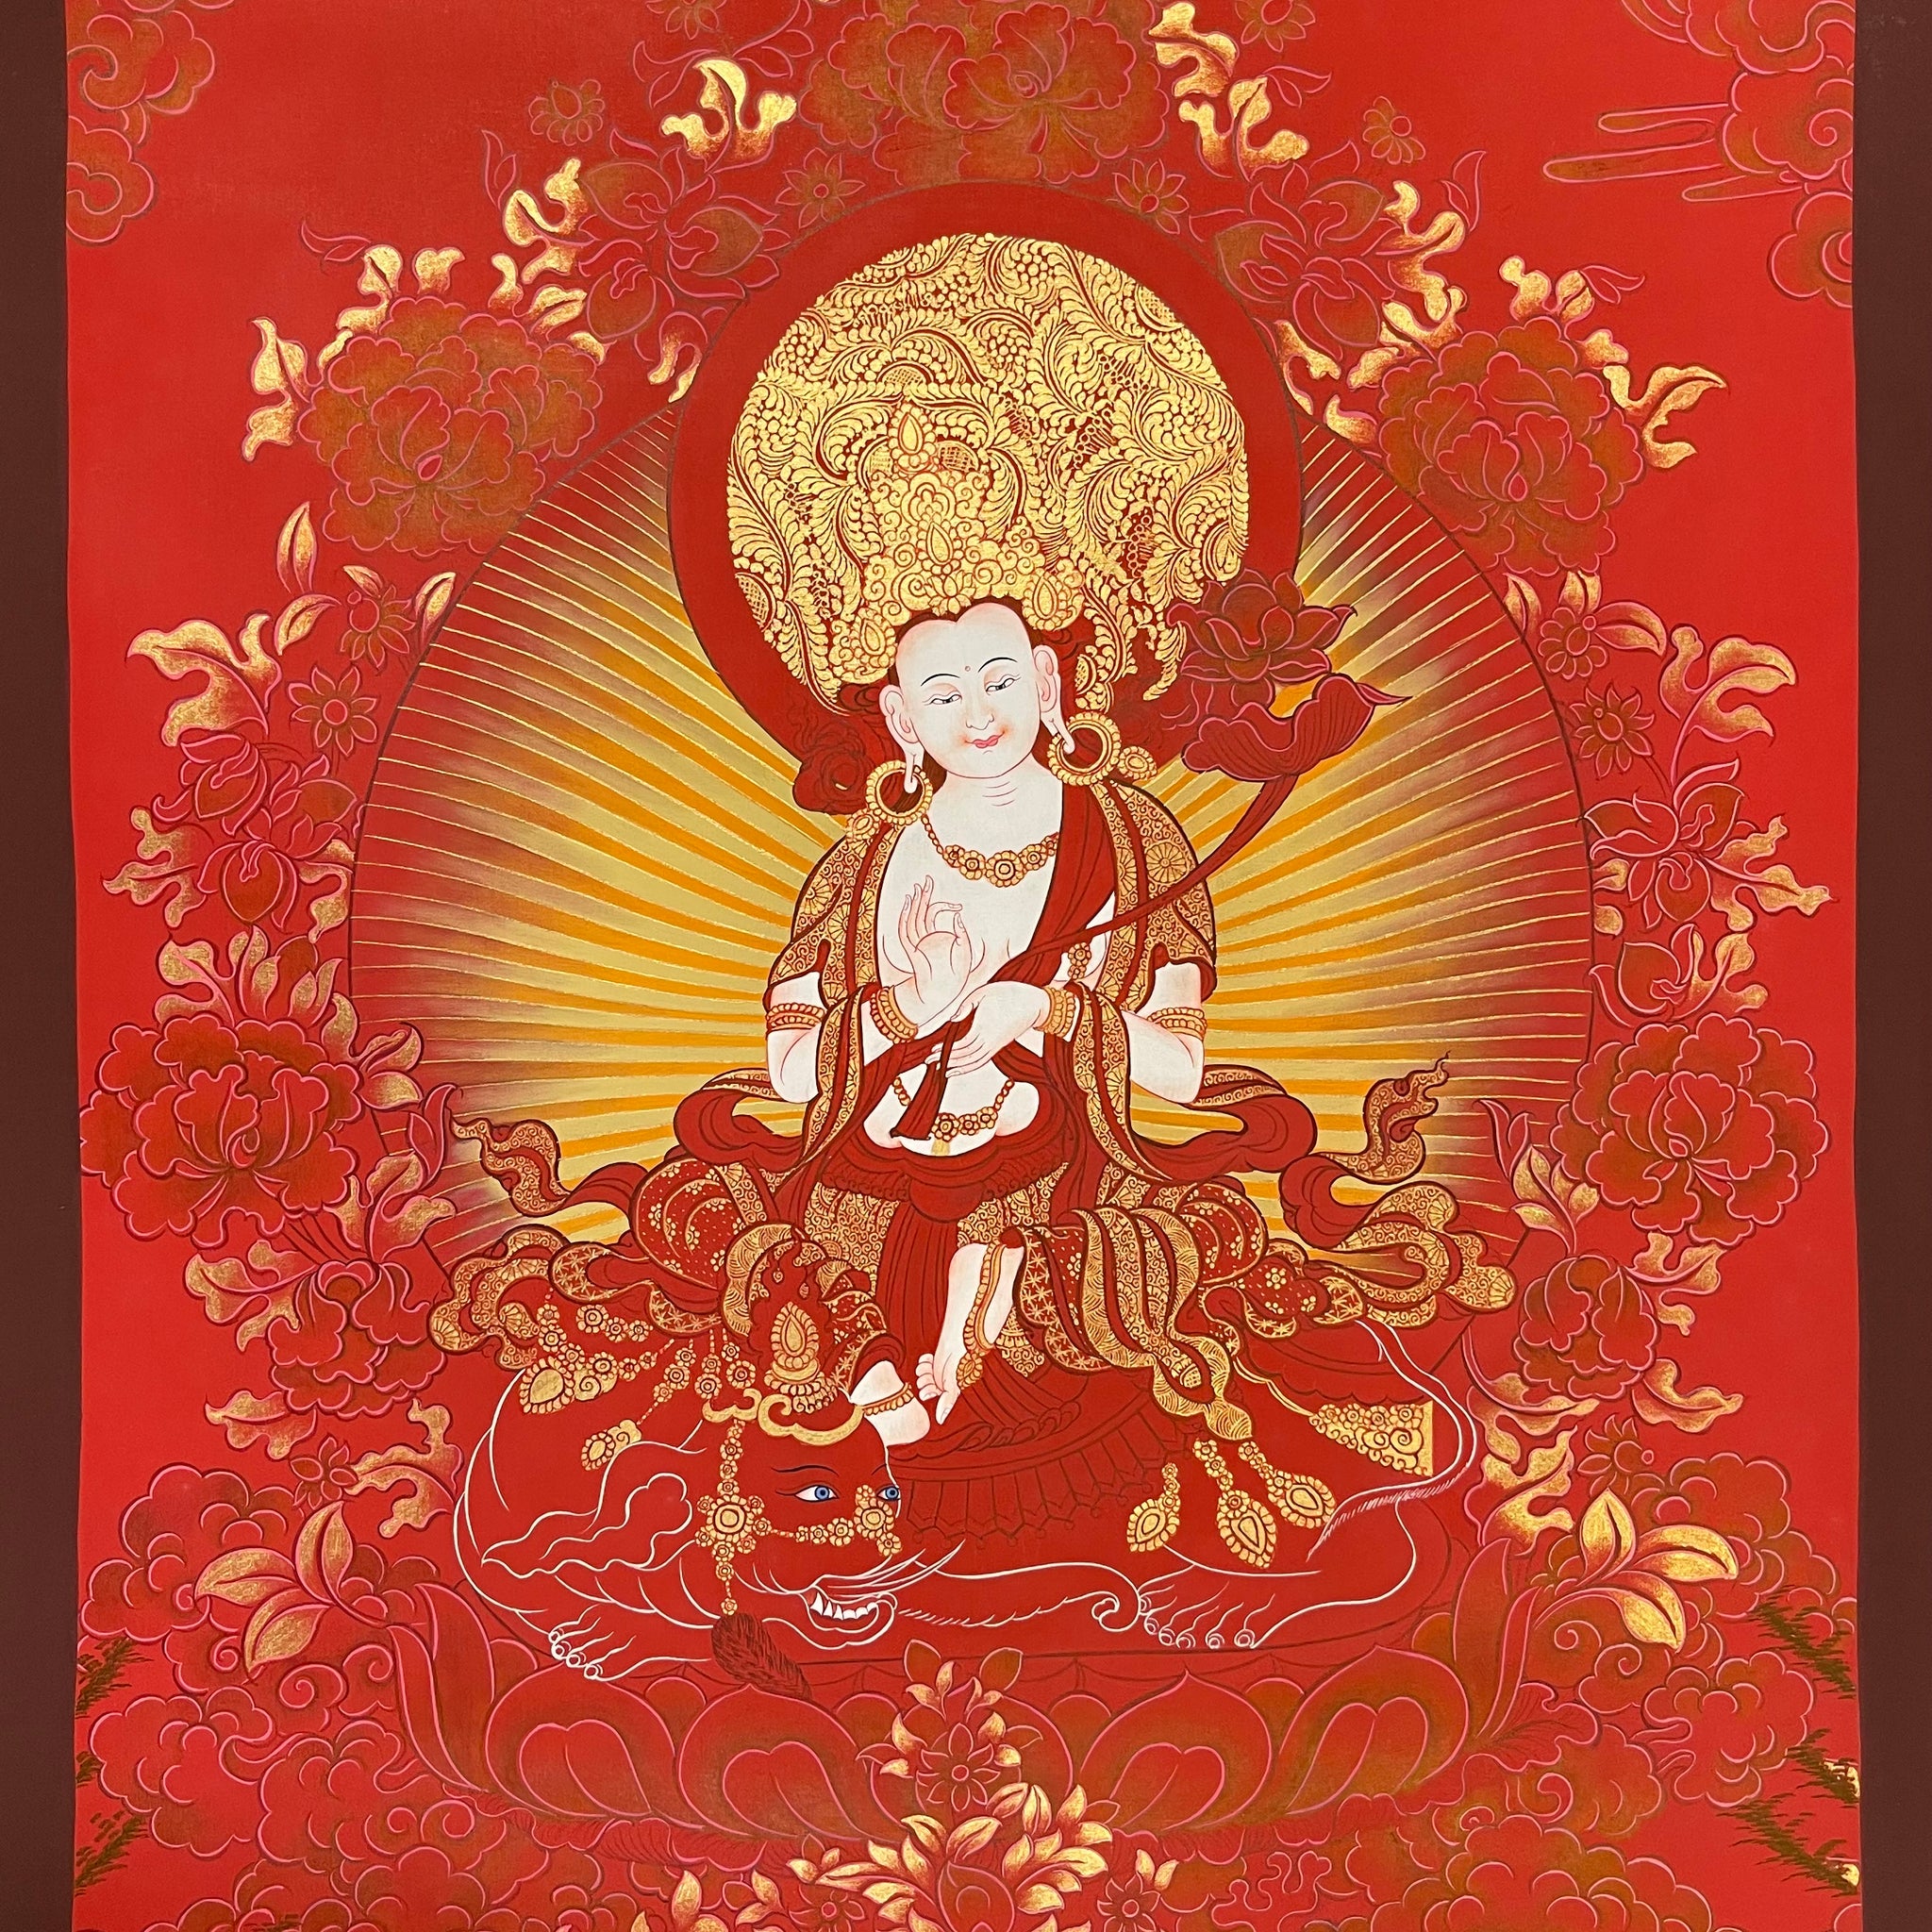 Samantabhadra Bodhisattva (Puxian Pusa)